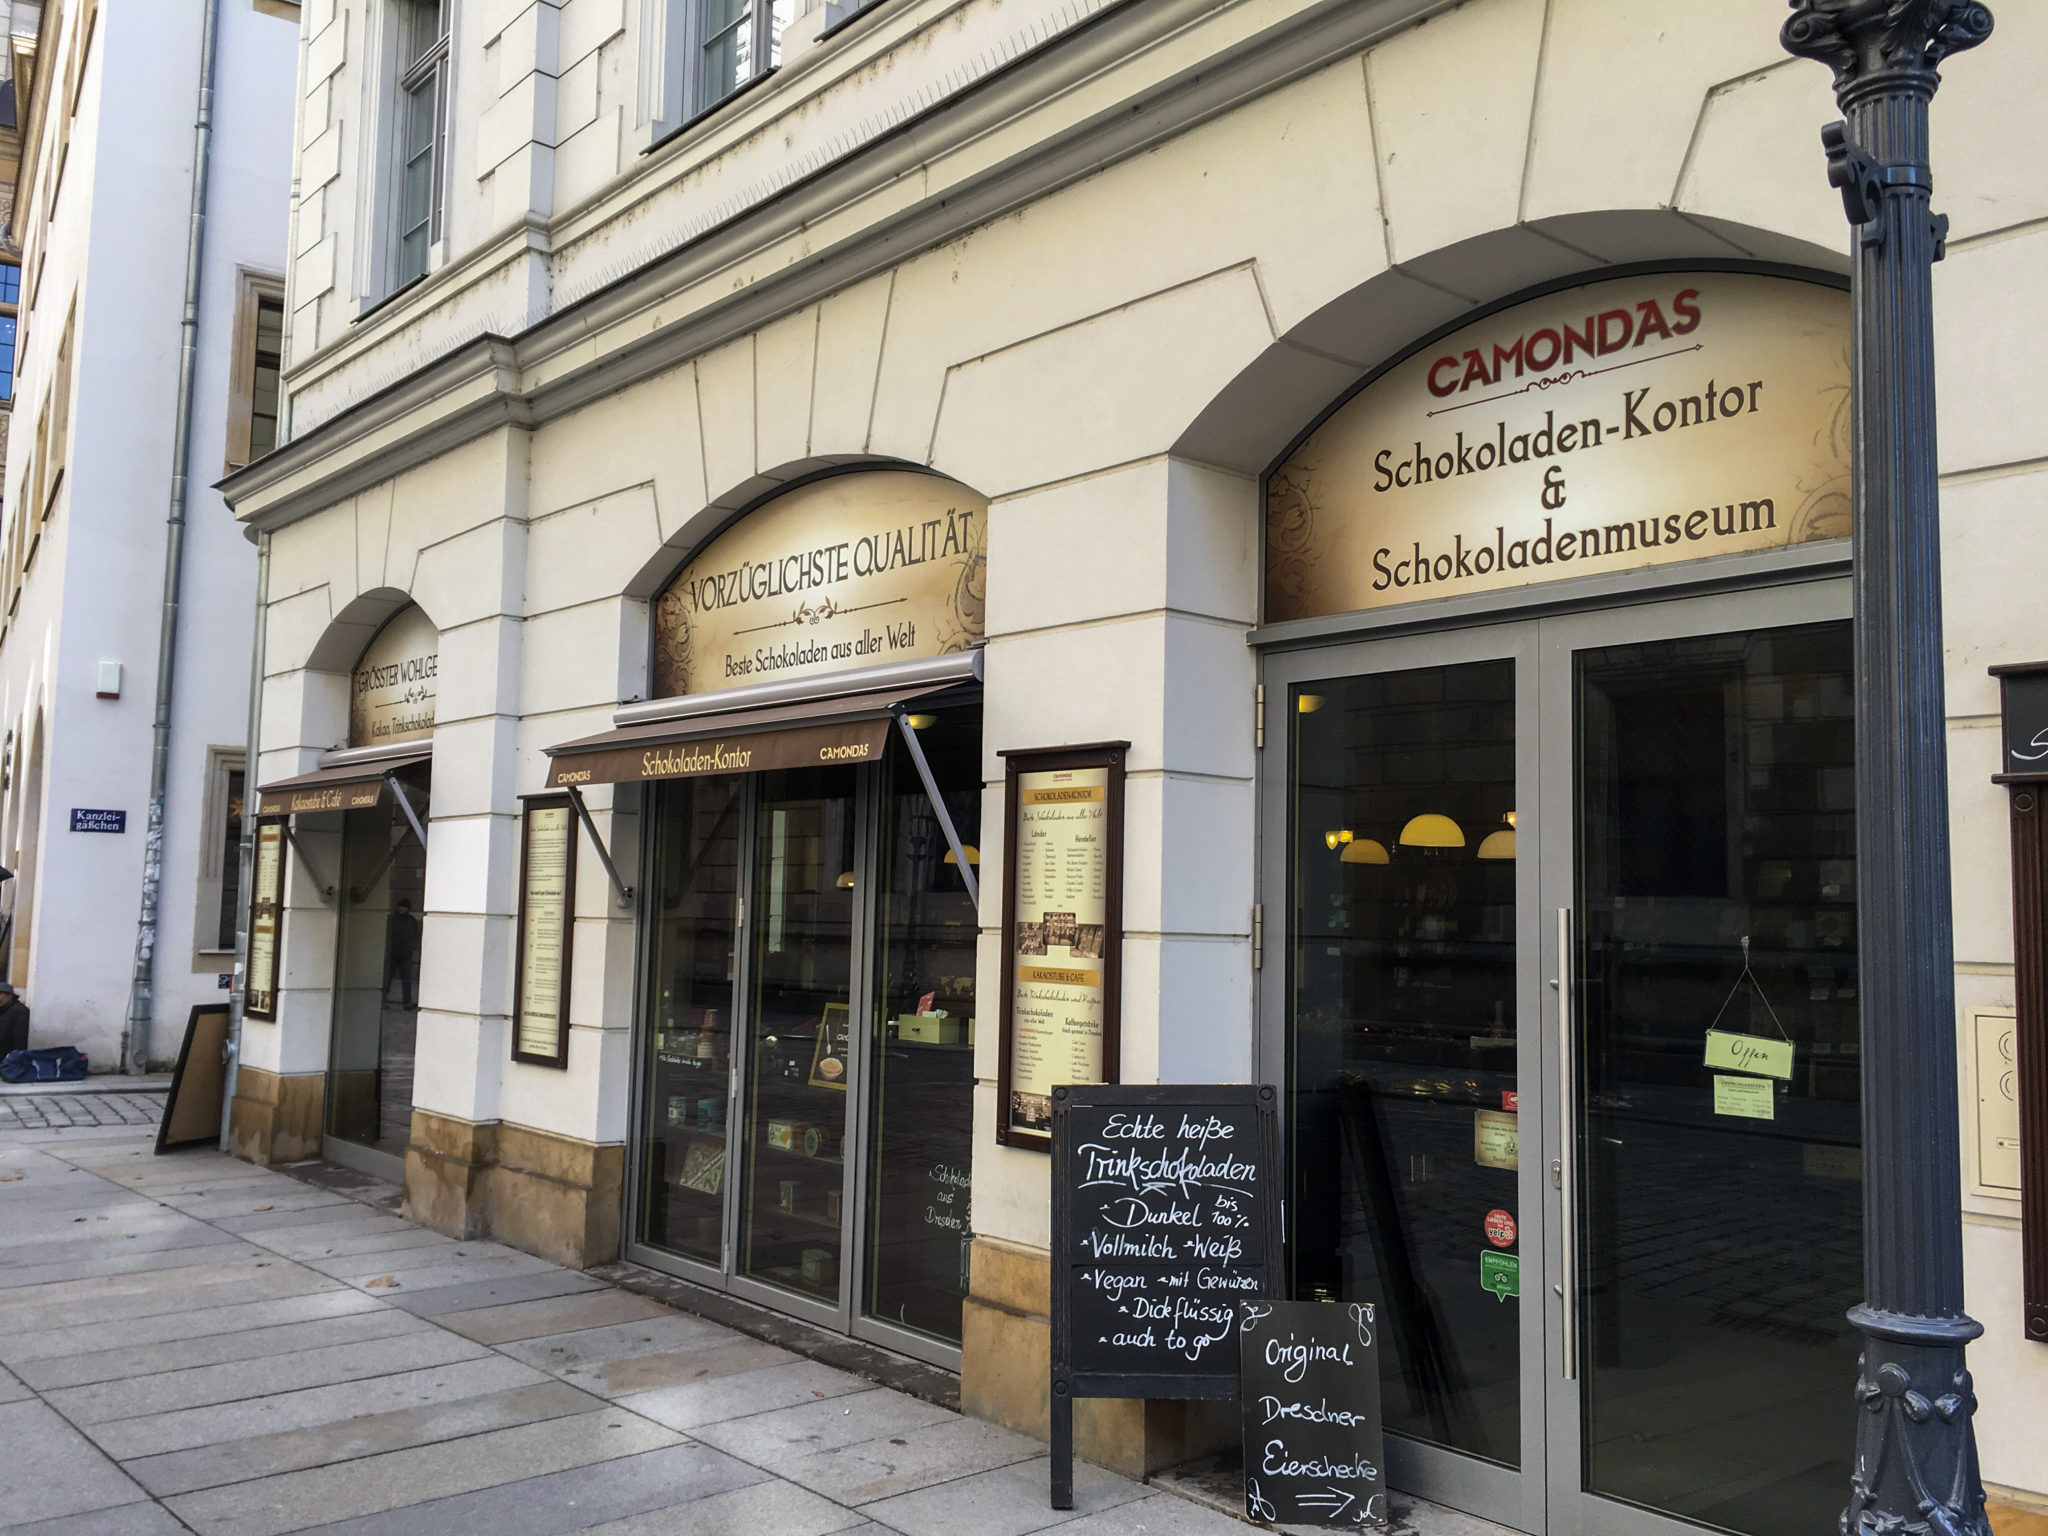 CAMONDAS Schokoladen-Contor in Dresden